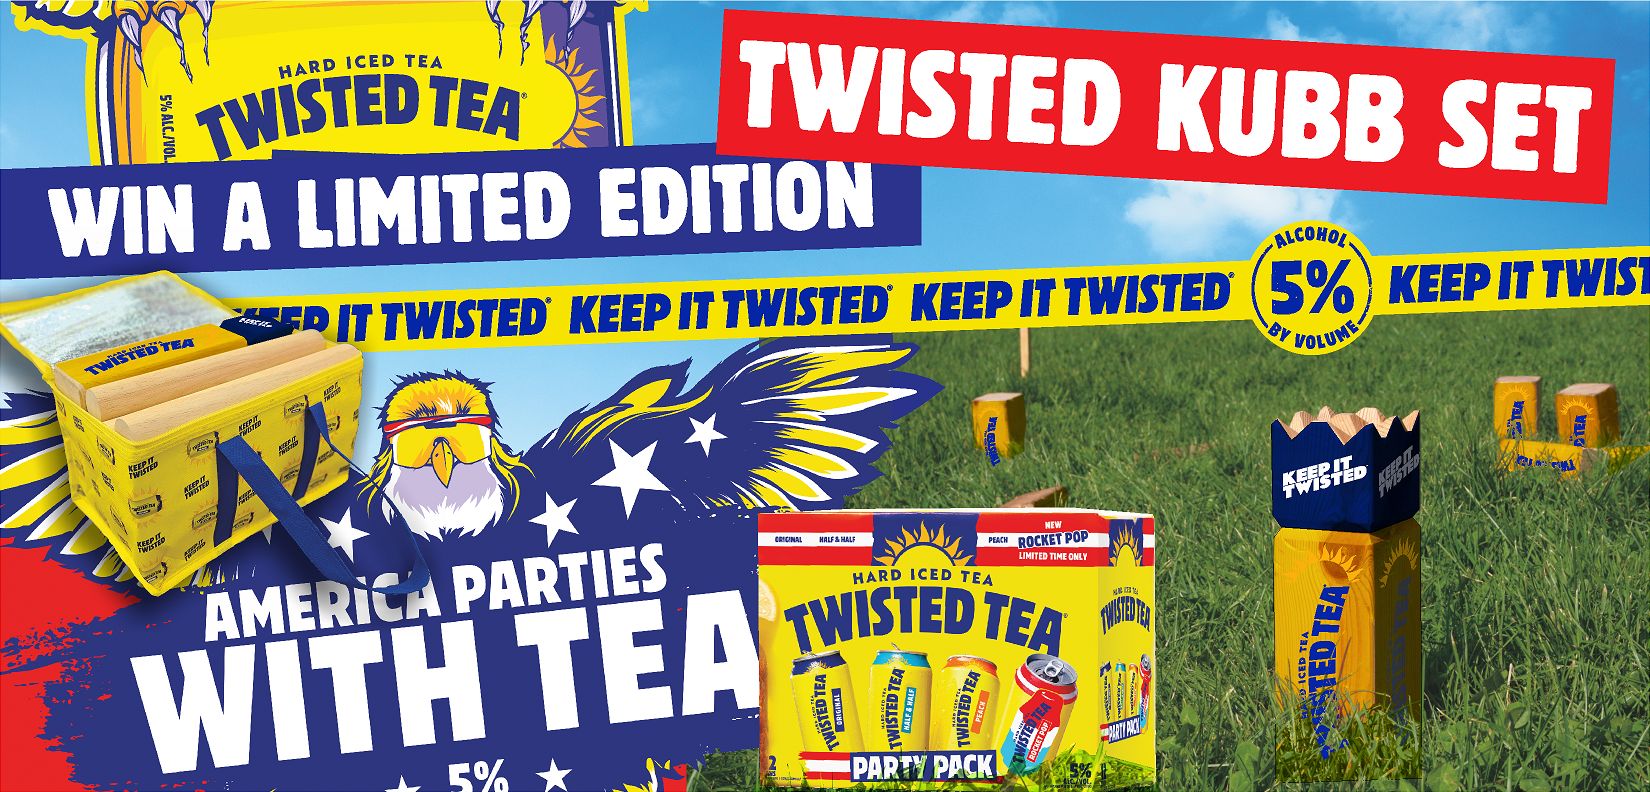 win-a-twisted-tea-kubb-set-4-20-5-30-dahlheimerbeverage